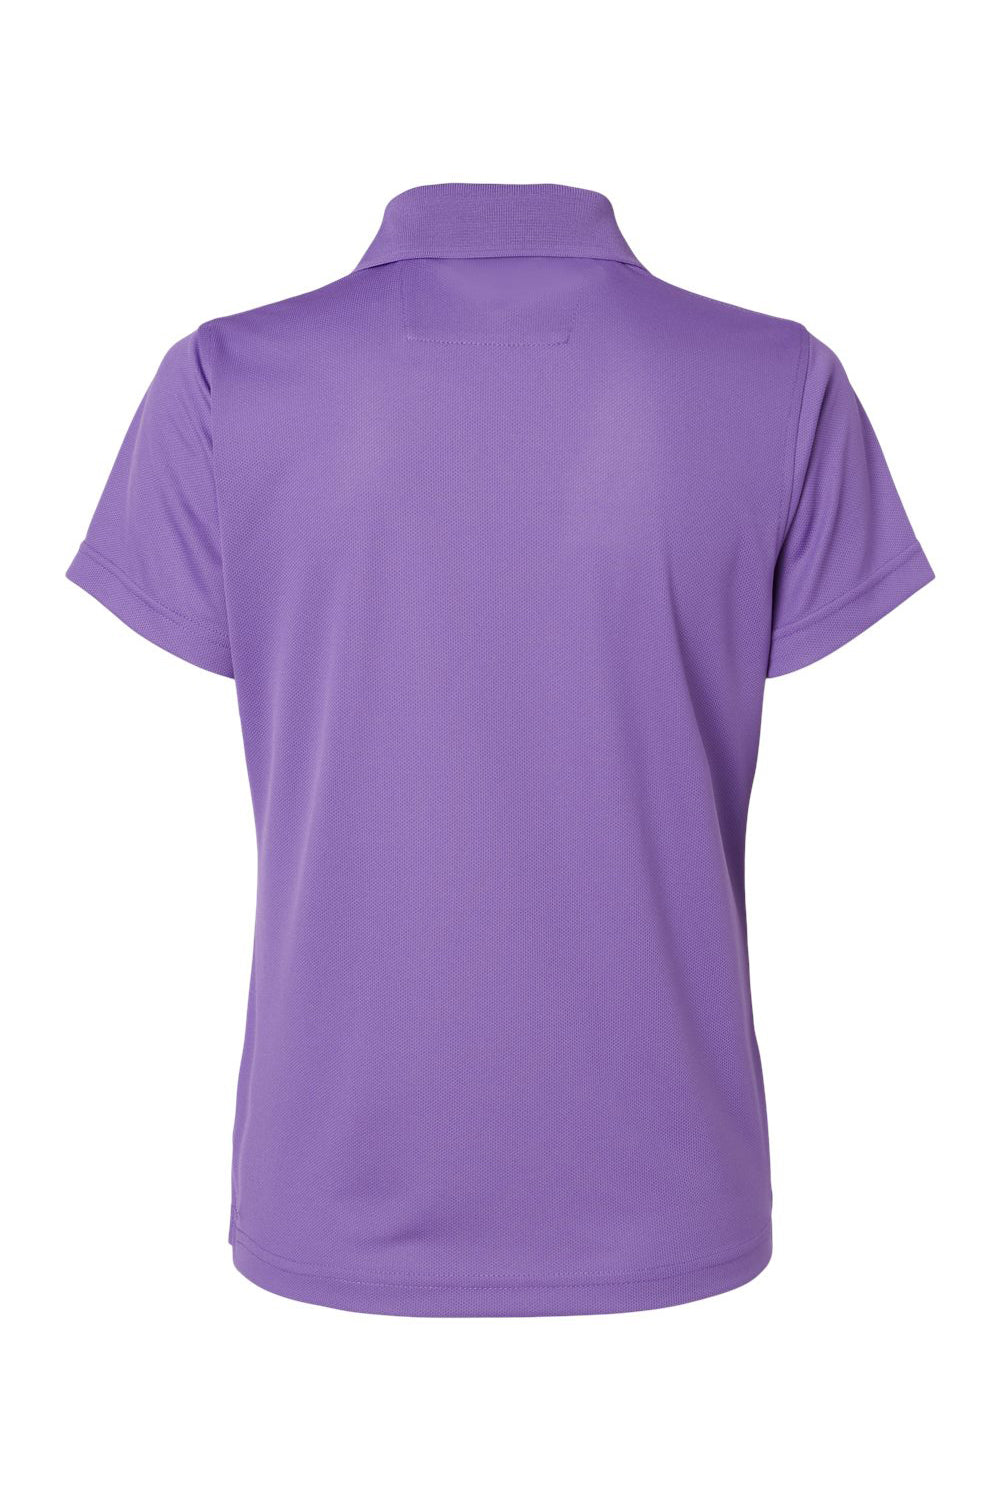 Paragon 104 Womens Saratoga Performance Mini Mesh Short Sleeve Polo Shirt Grape Purple Flat Back